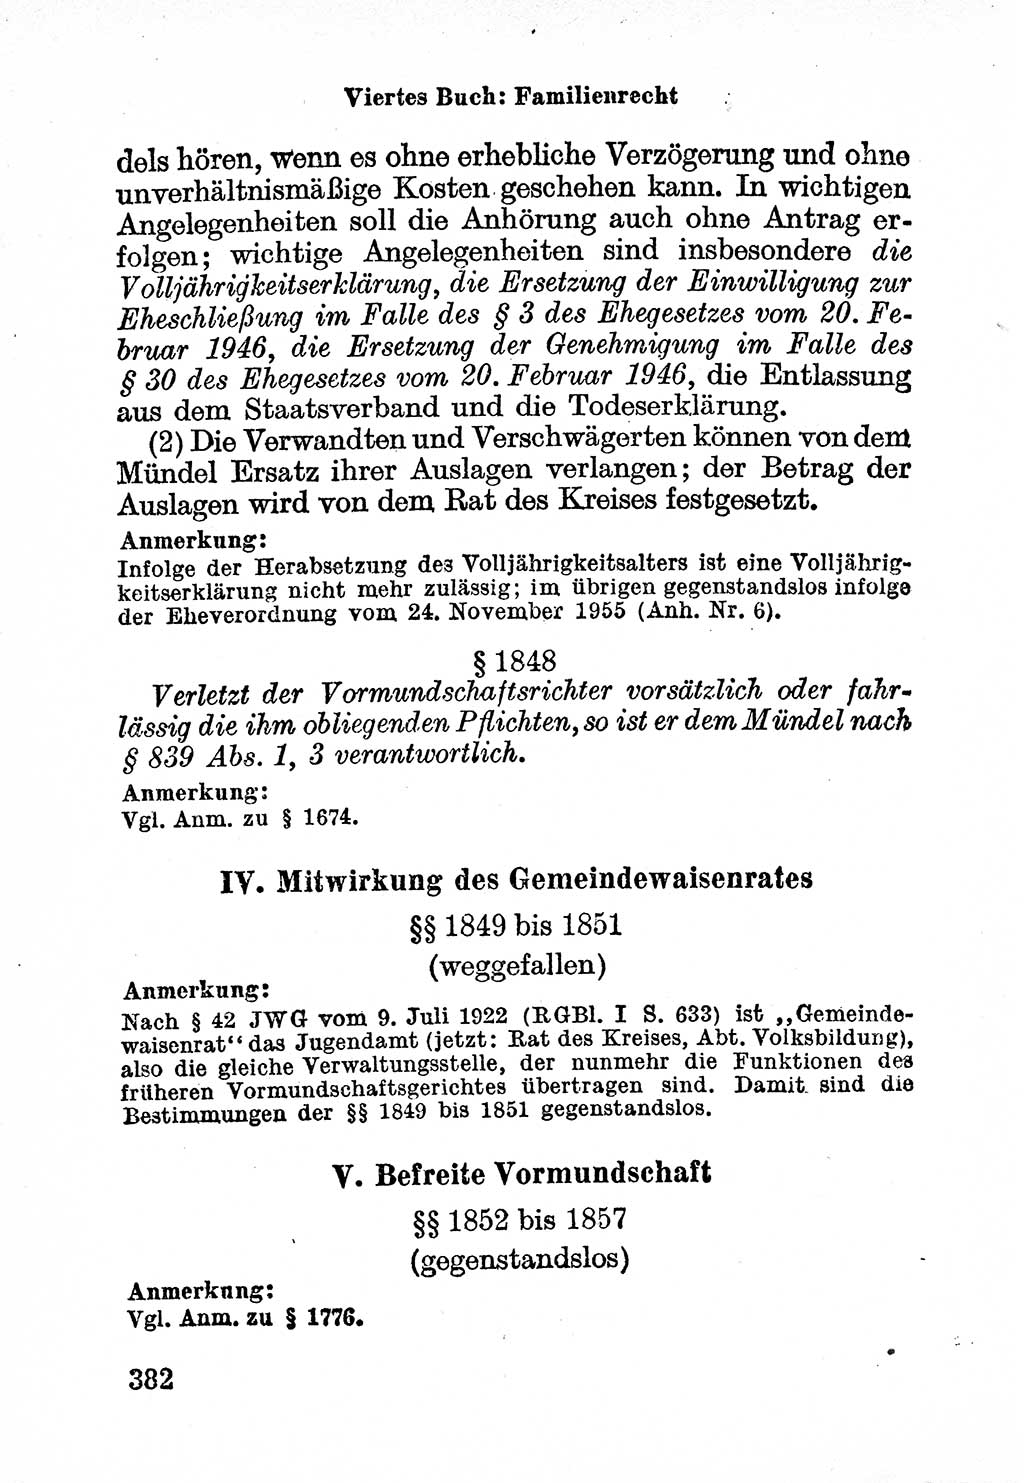 Bürgerliches Gesetzbuch (BGB) nebst wichtigen Nebengesetzen [Deutsche Demokratische Republik (DDR)] 1956, Seite 382 (BGB Nebenges. DDR 1956, S. 382)